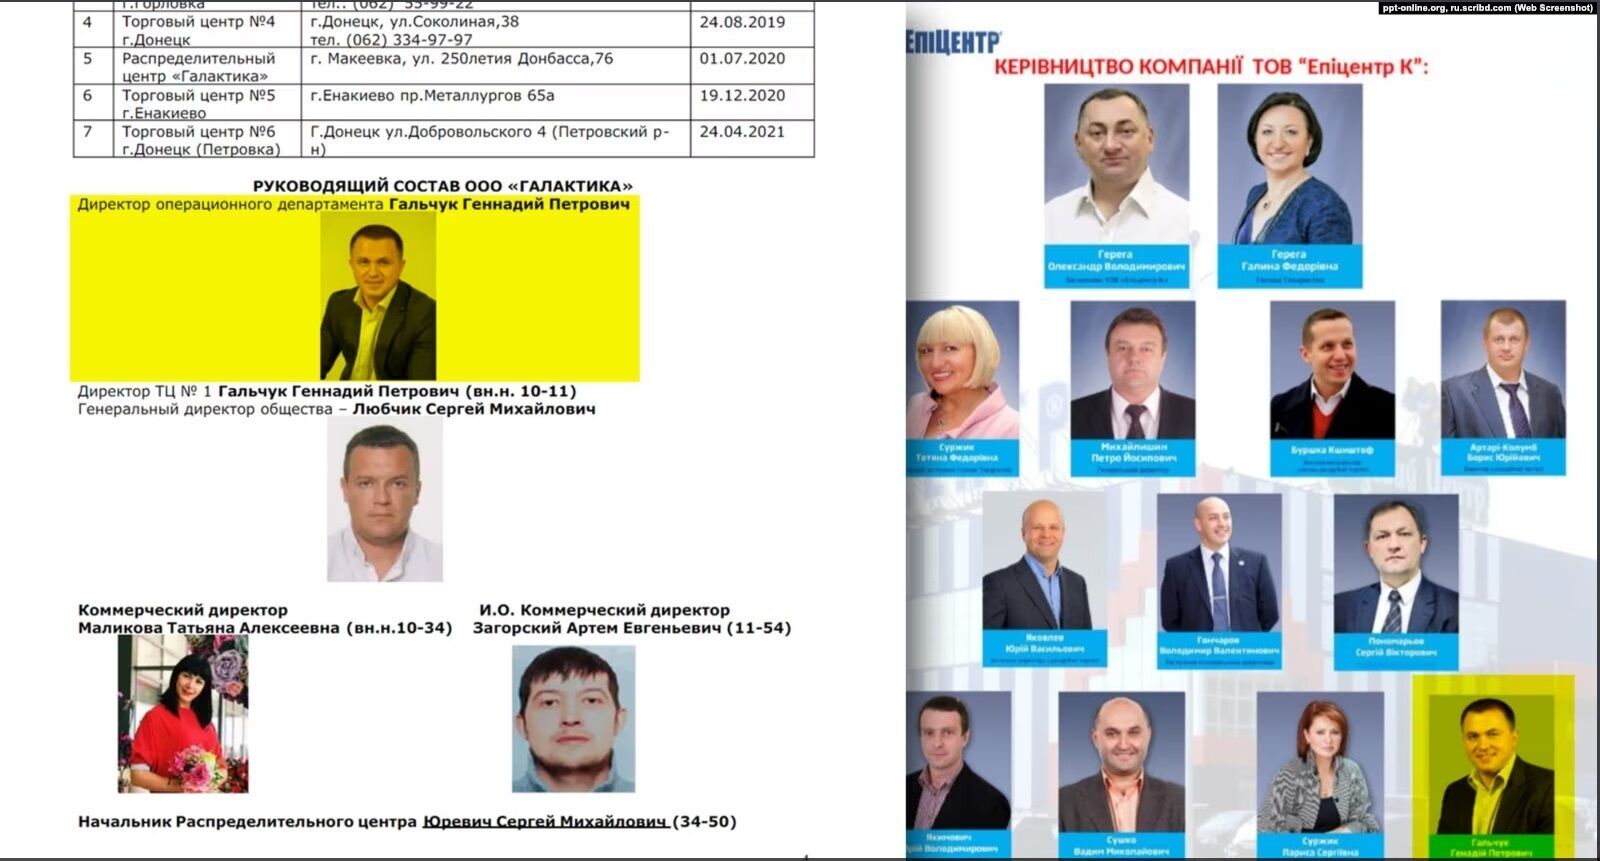 Олександр Герега, народний депутат України, фінансував колишнього директора гіпермаркету на окупованій території